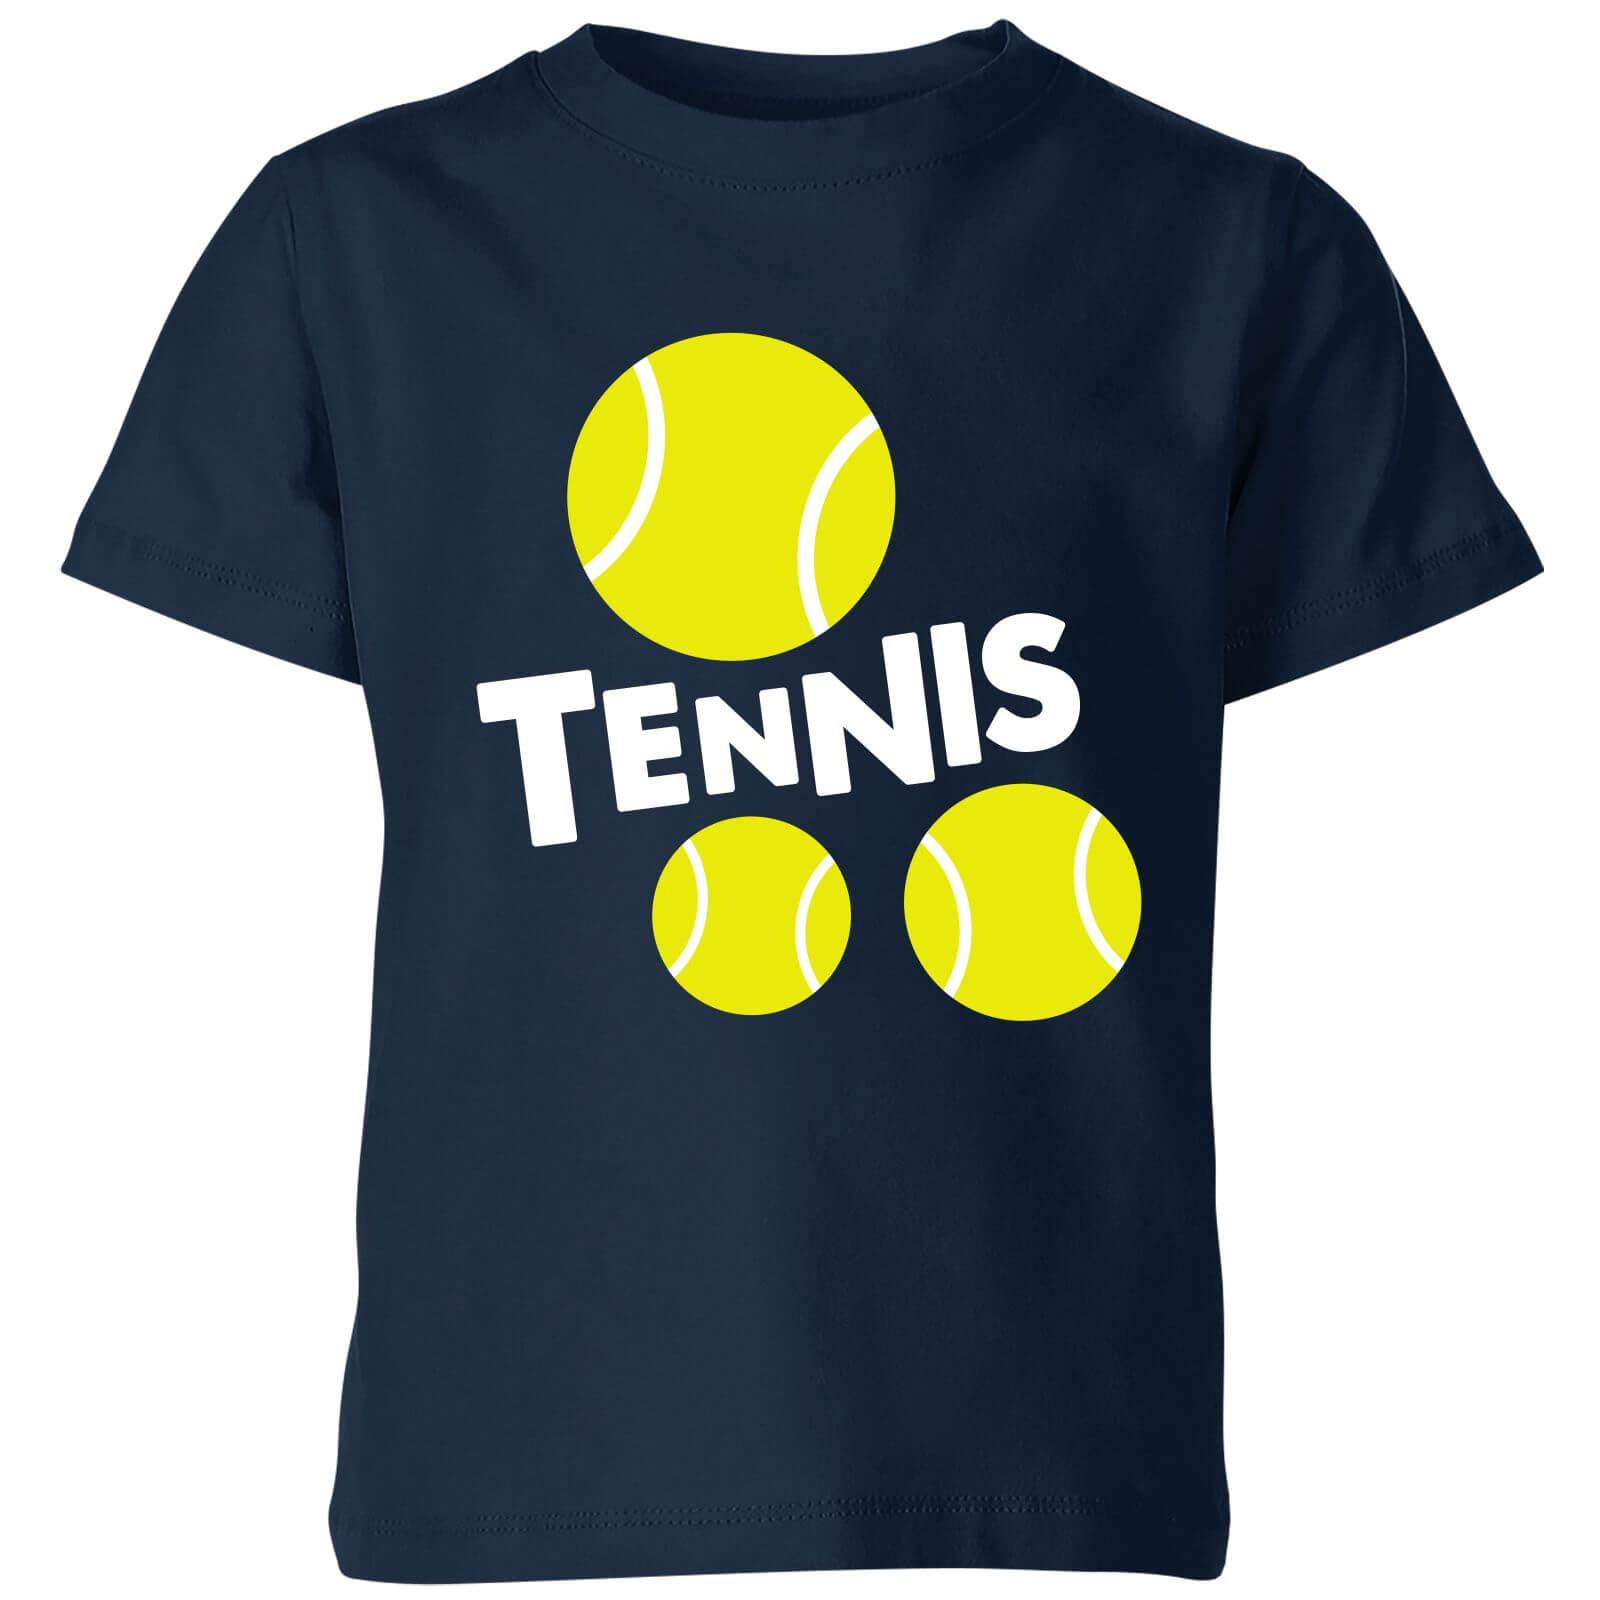 Tennis Balls Kids T Shirt   Navy   7 8 Years   Navy